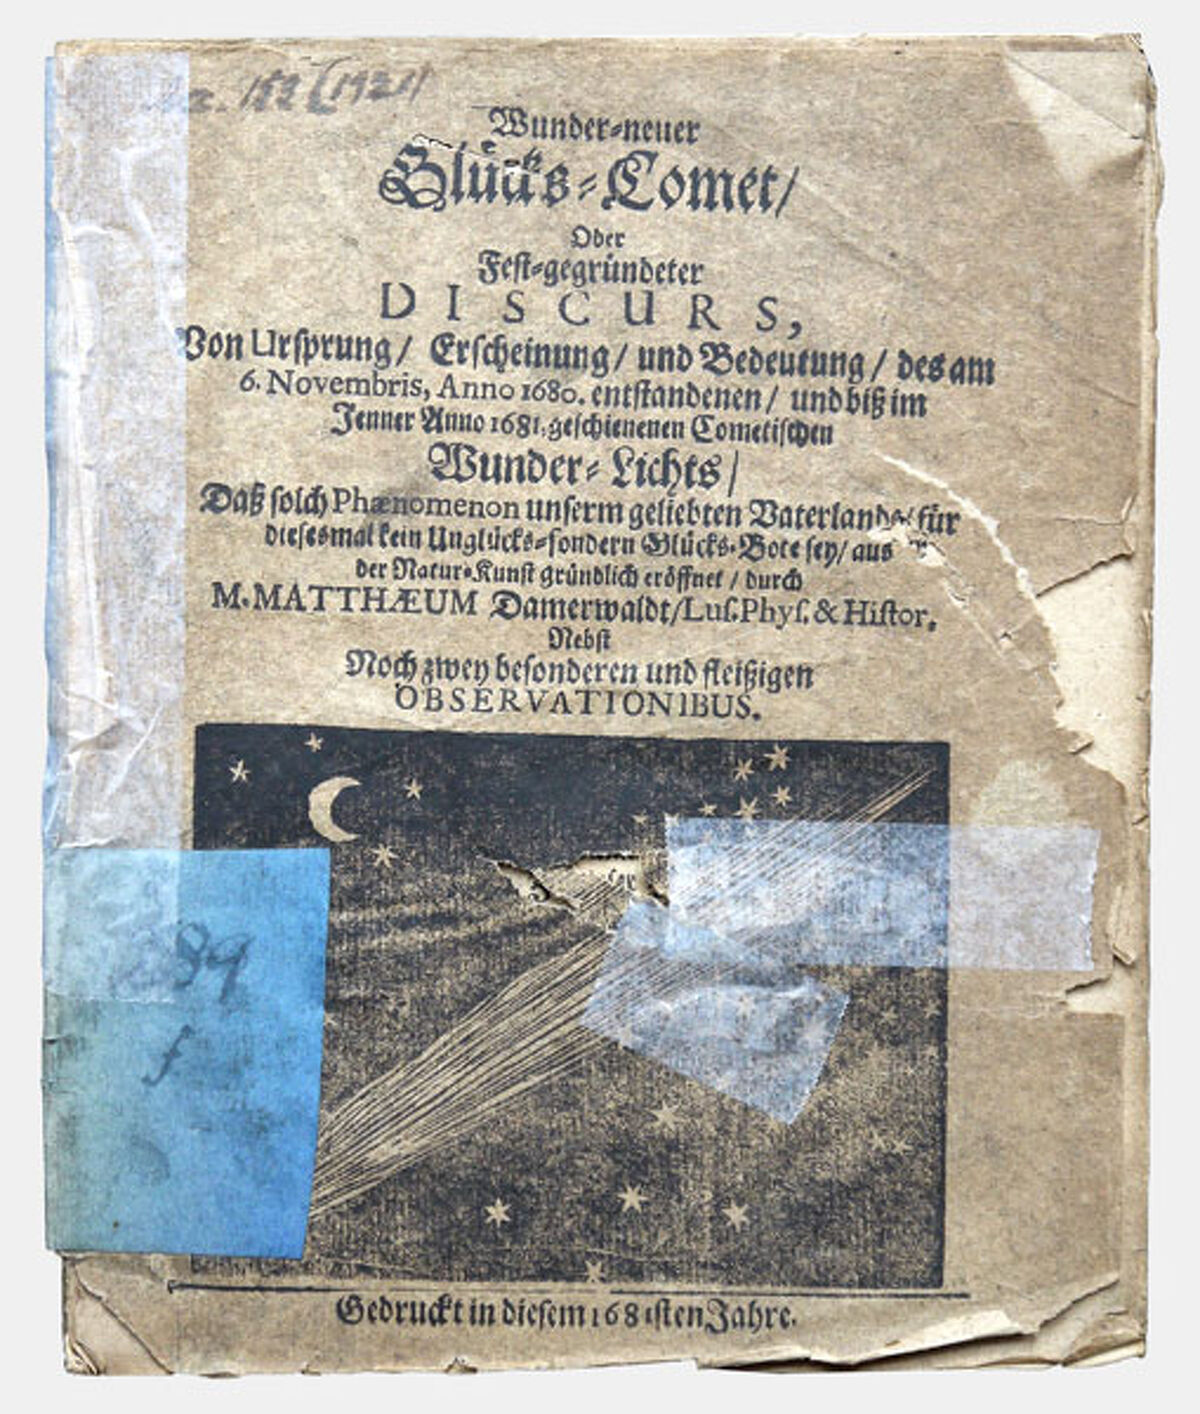 Der Druck »Wunder=neuer Gluͤcks=Comet/ [...]« von Mattheus Damerwaldt, 1681